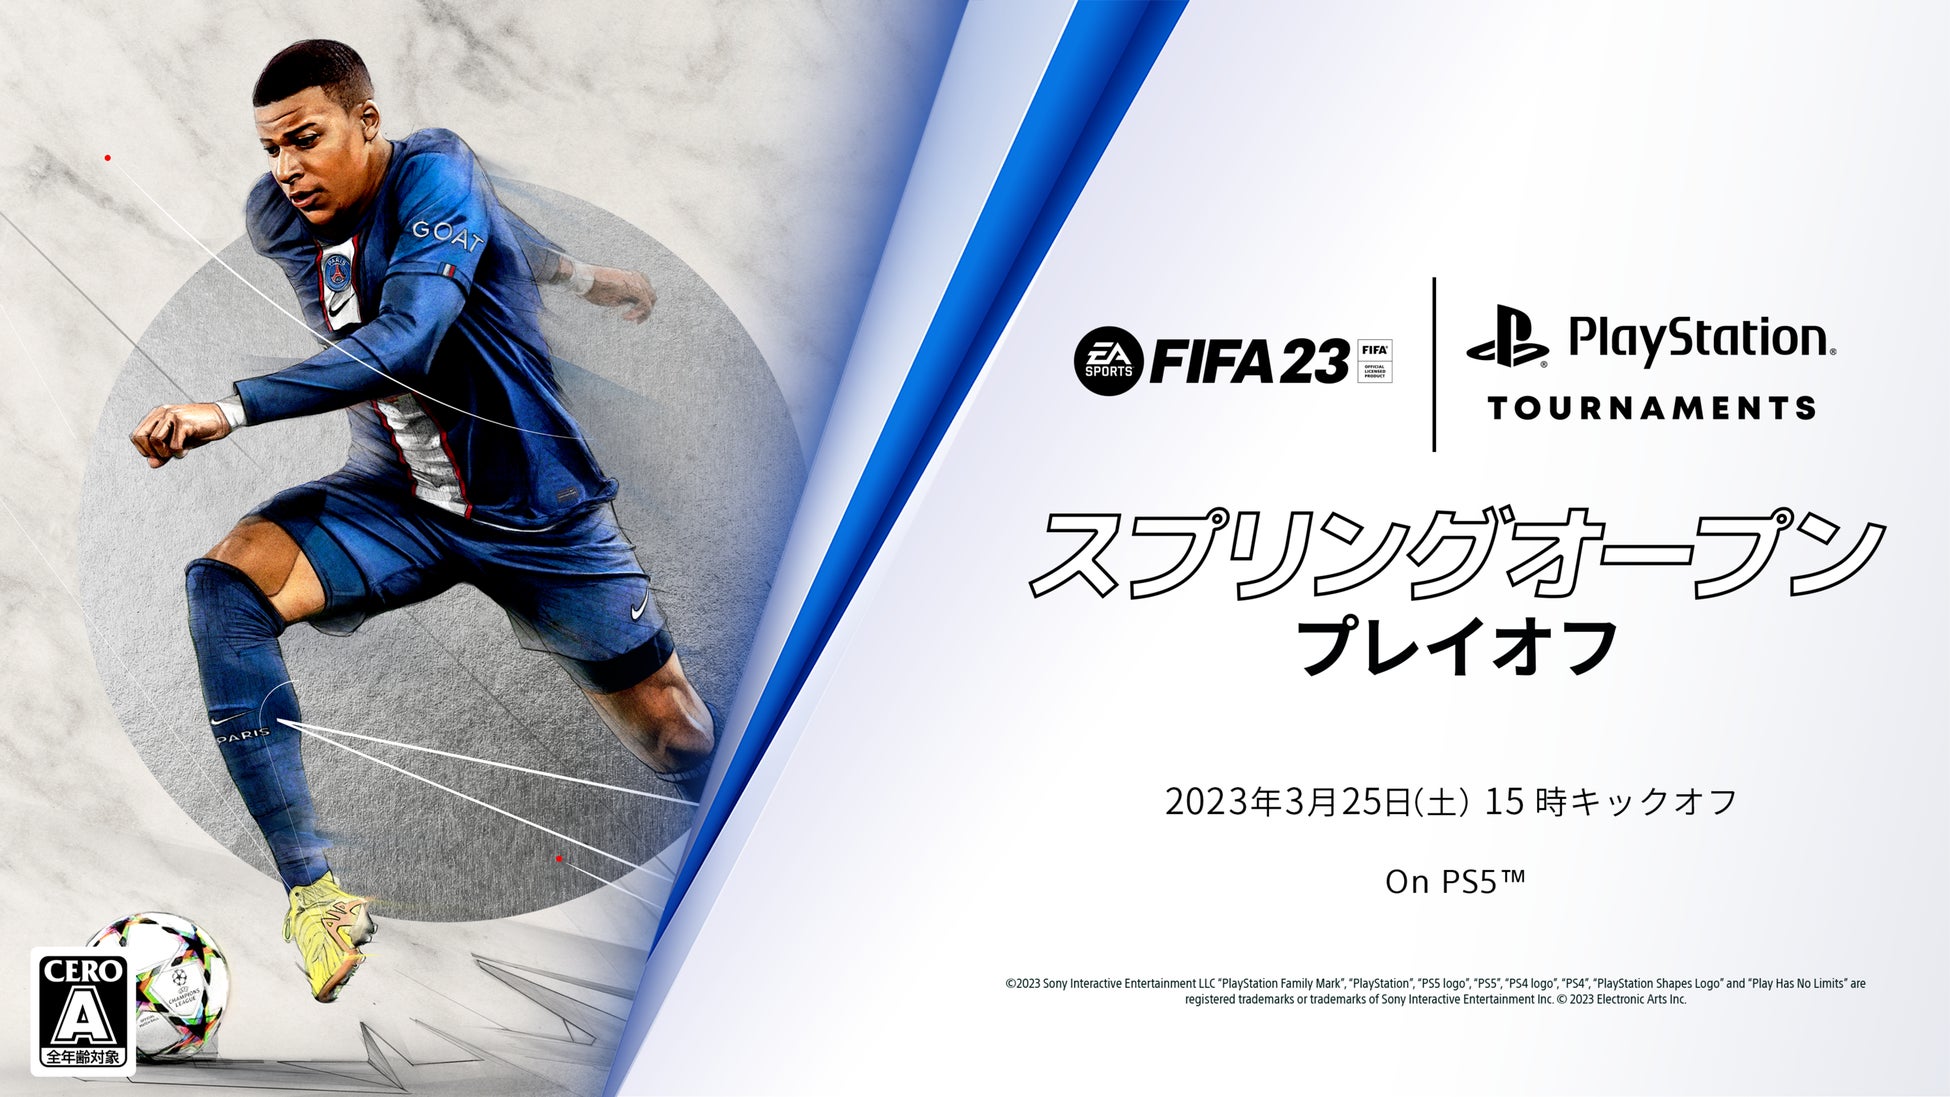 「FIFA 23 スプリングオープン」プレイオフ開幕！賞金総額50万円。予選を勝ち抜いた選手たちが、王座をかけて競い合う。